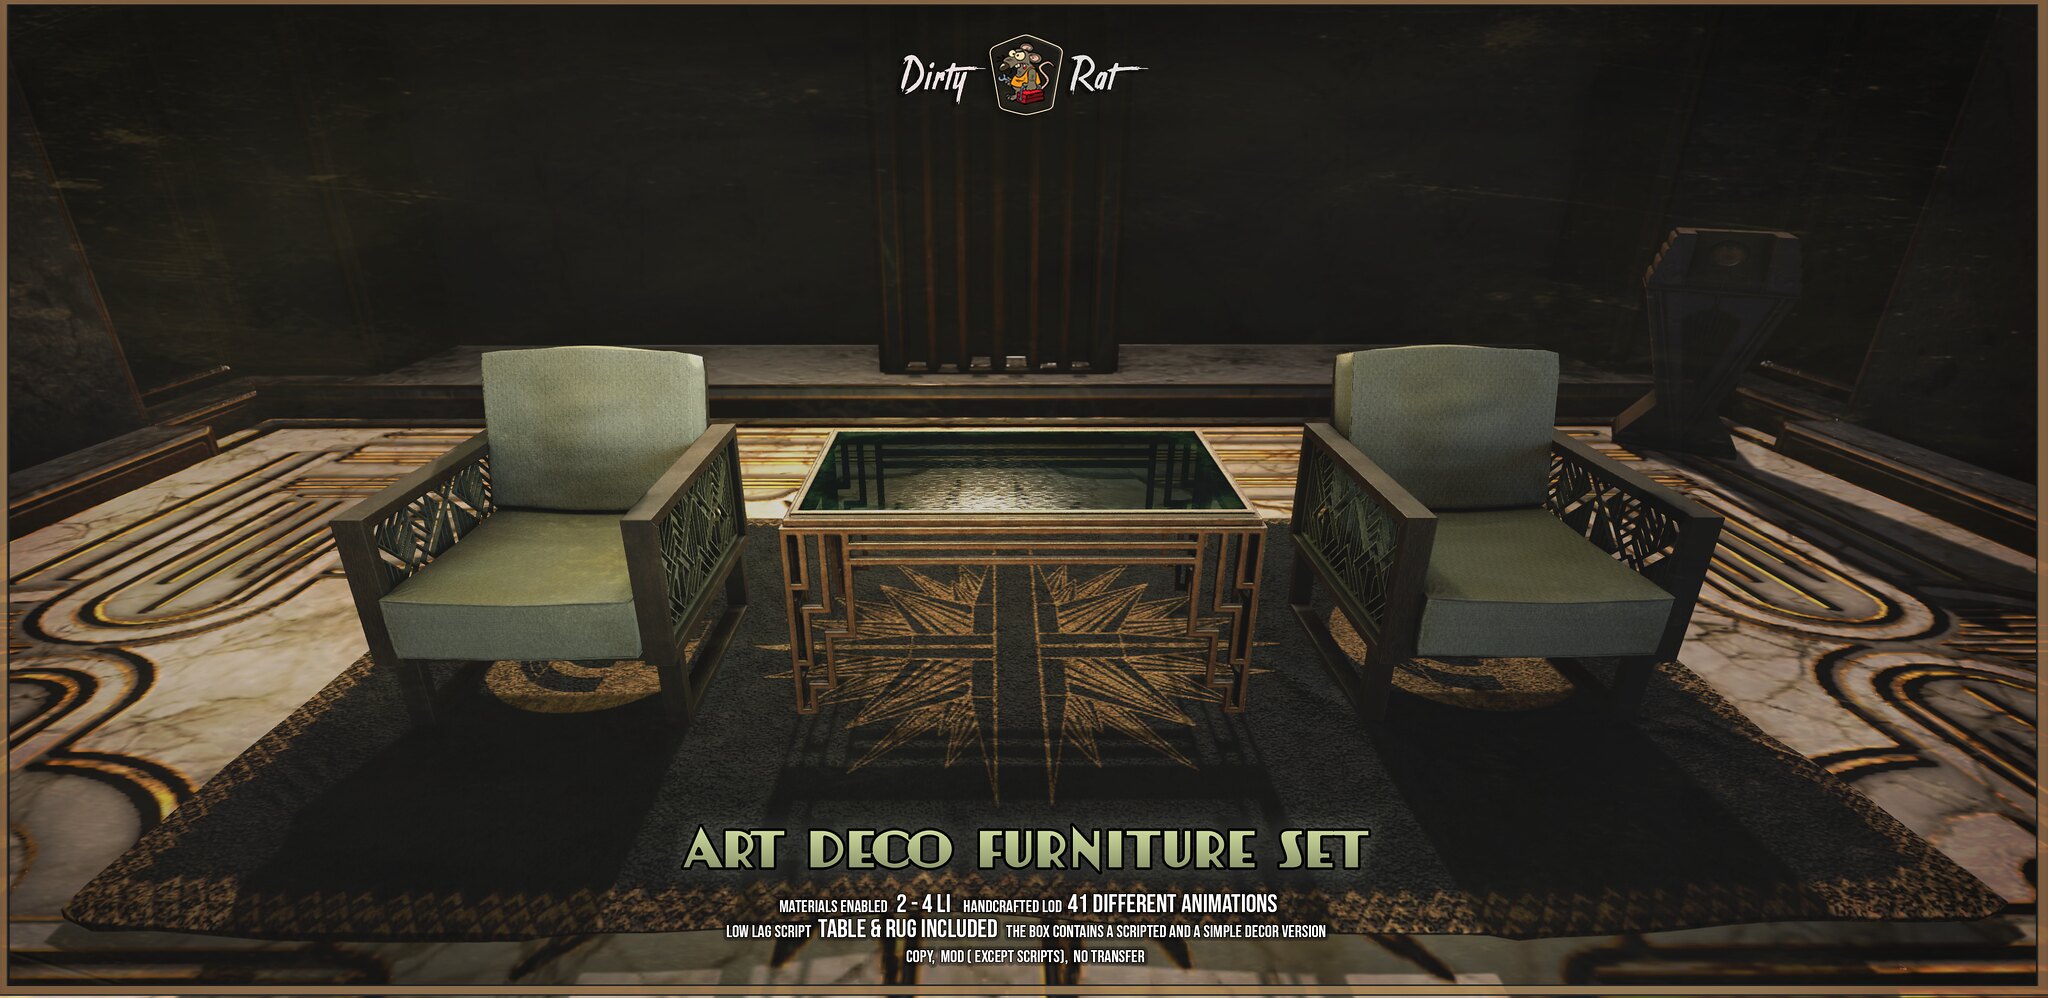 Dirty Rat – Art Deco Furniture, Wall Lamp, Radio and Floor Lamp